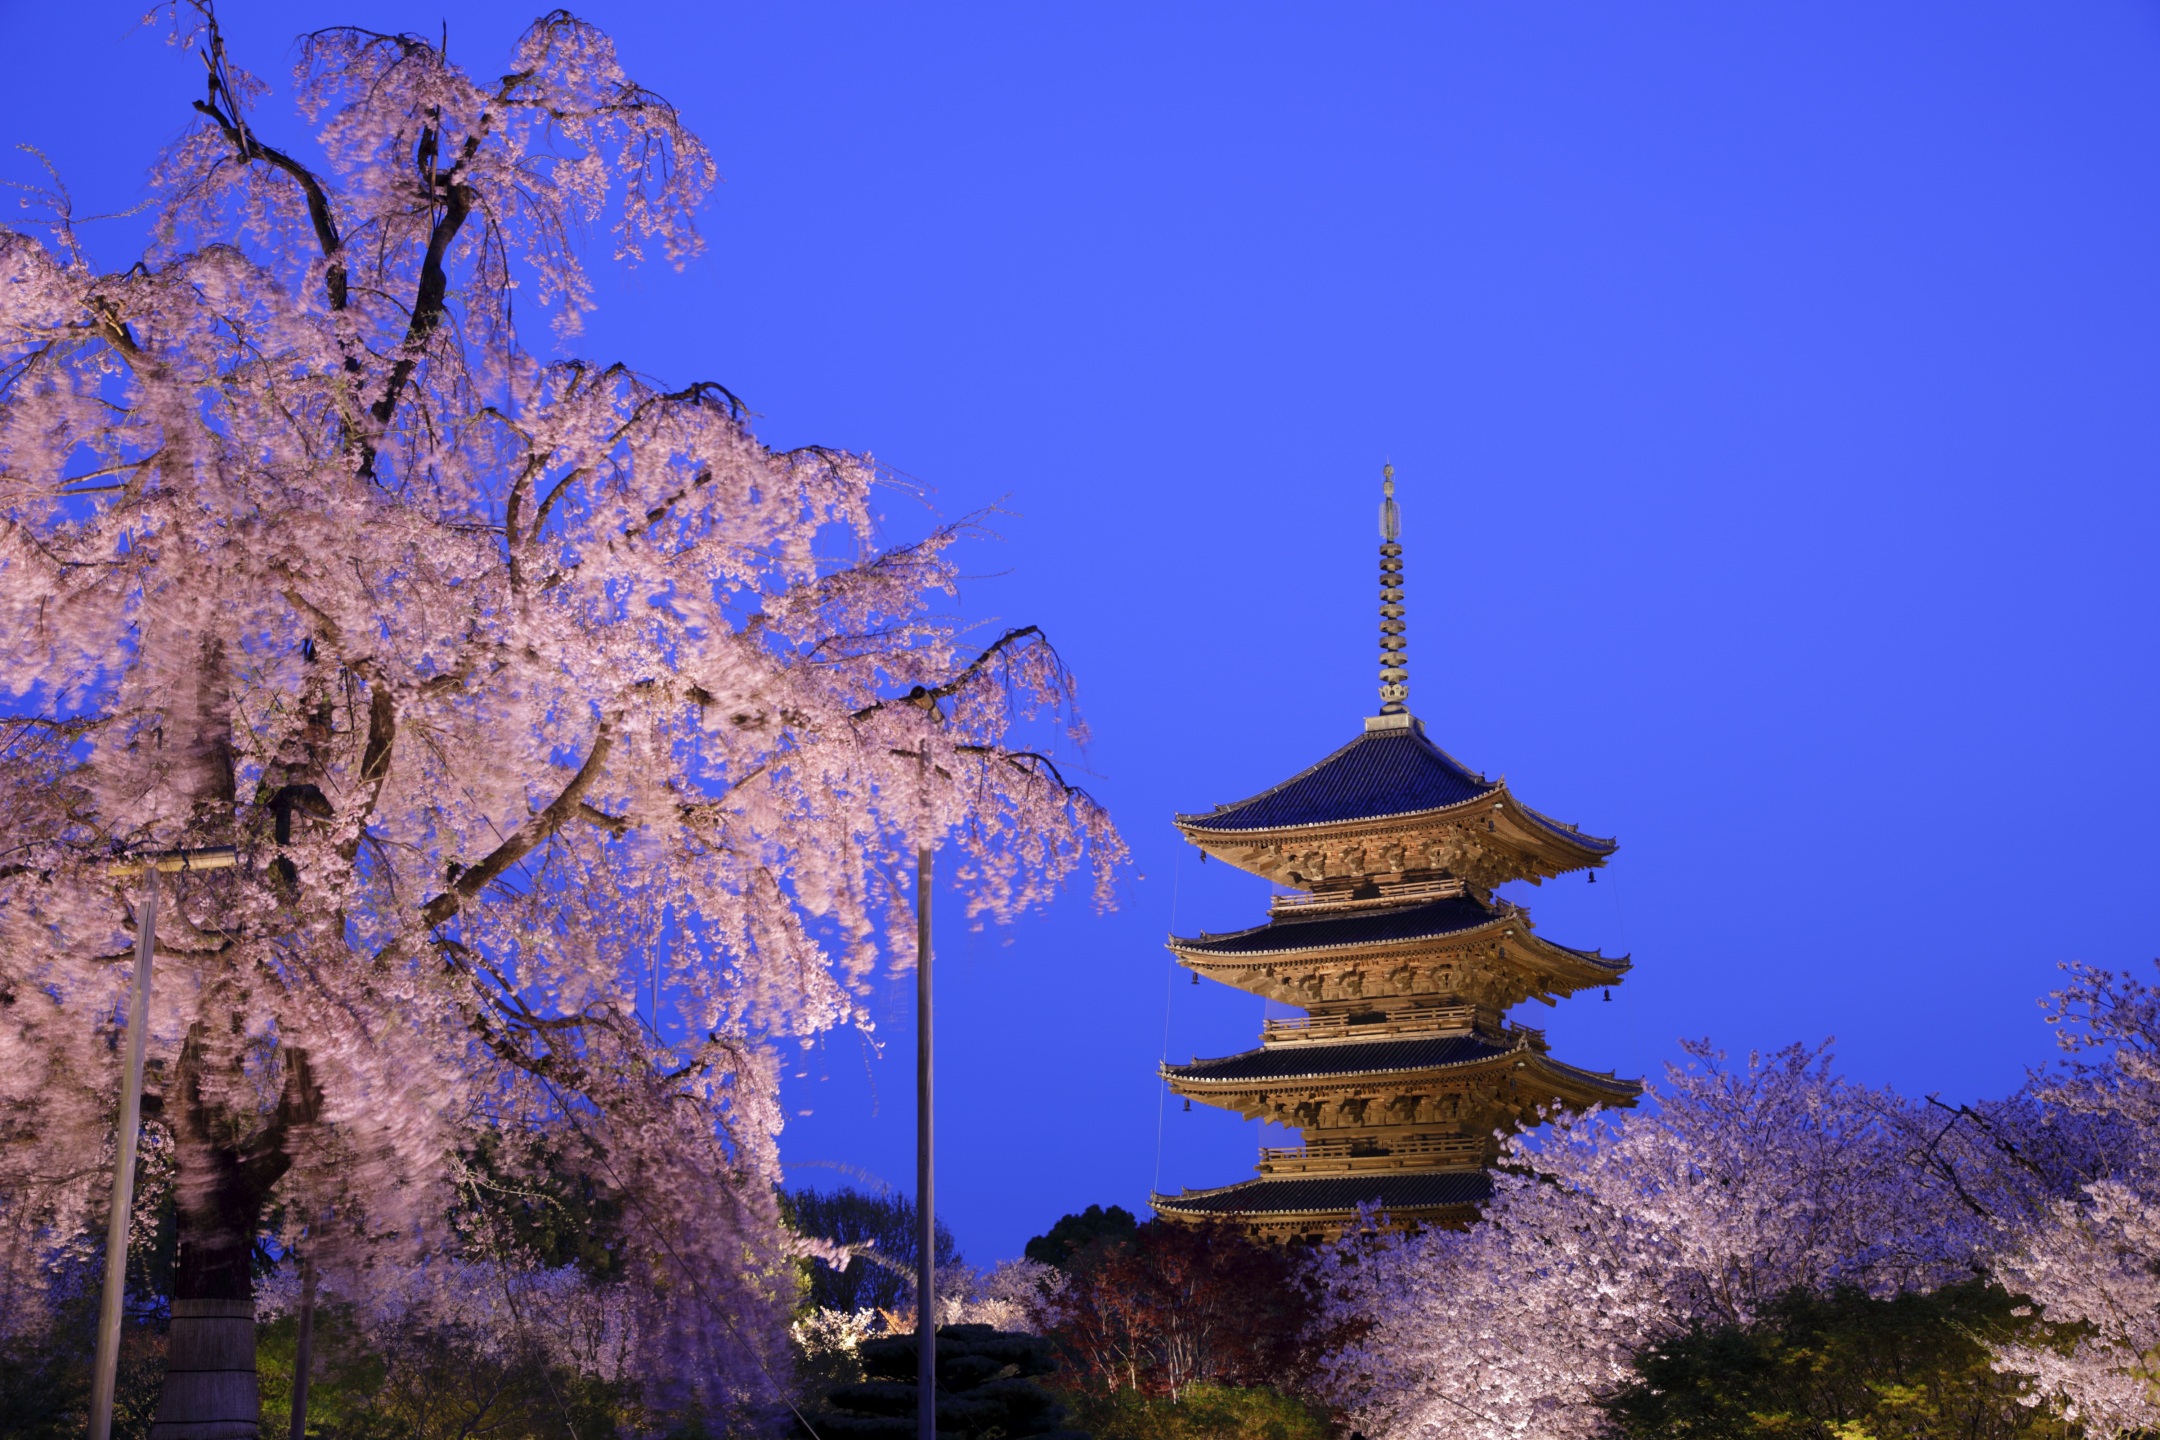 京都を代表する五重塔と不二桜の美しいコンビネーションは必見